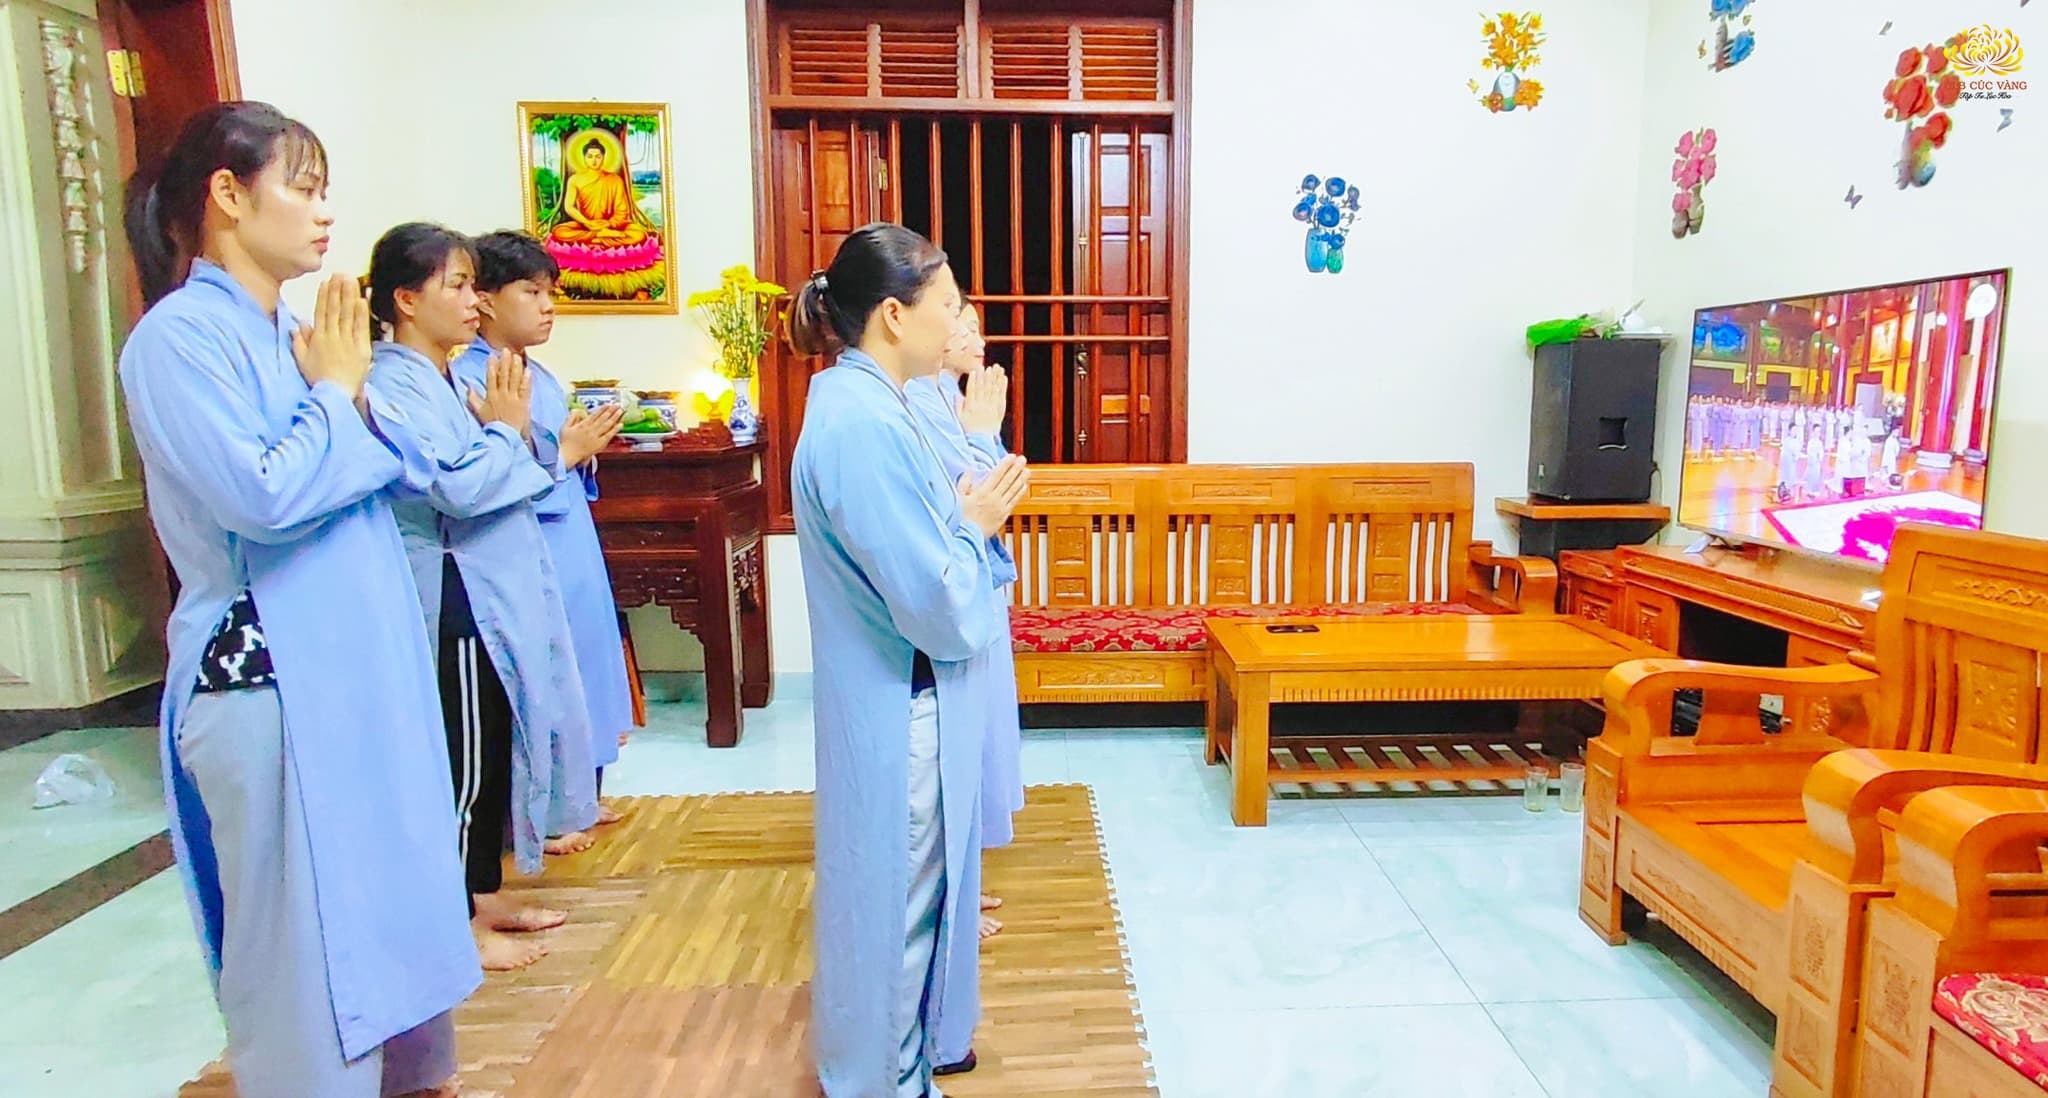 Tại nhà, các Phật tử đạo tràng Minh Giác - Tân Tiến, Hải Phòng tập trung cùng tu tập